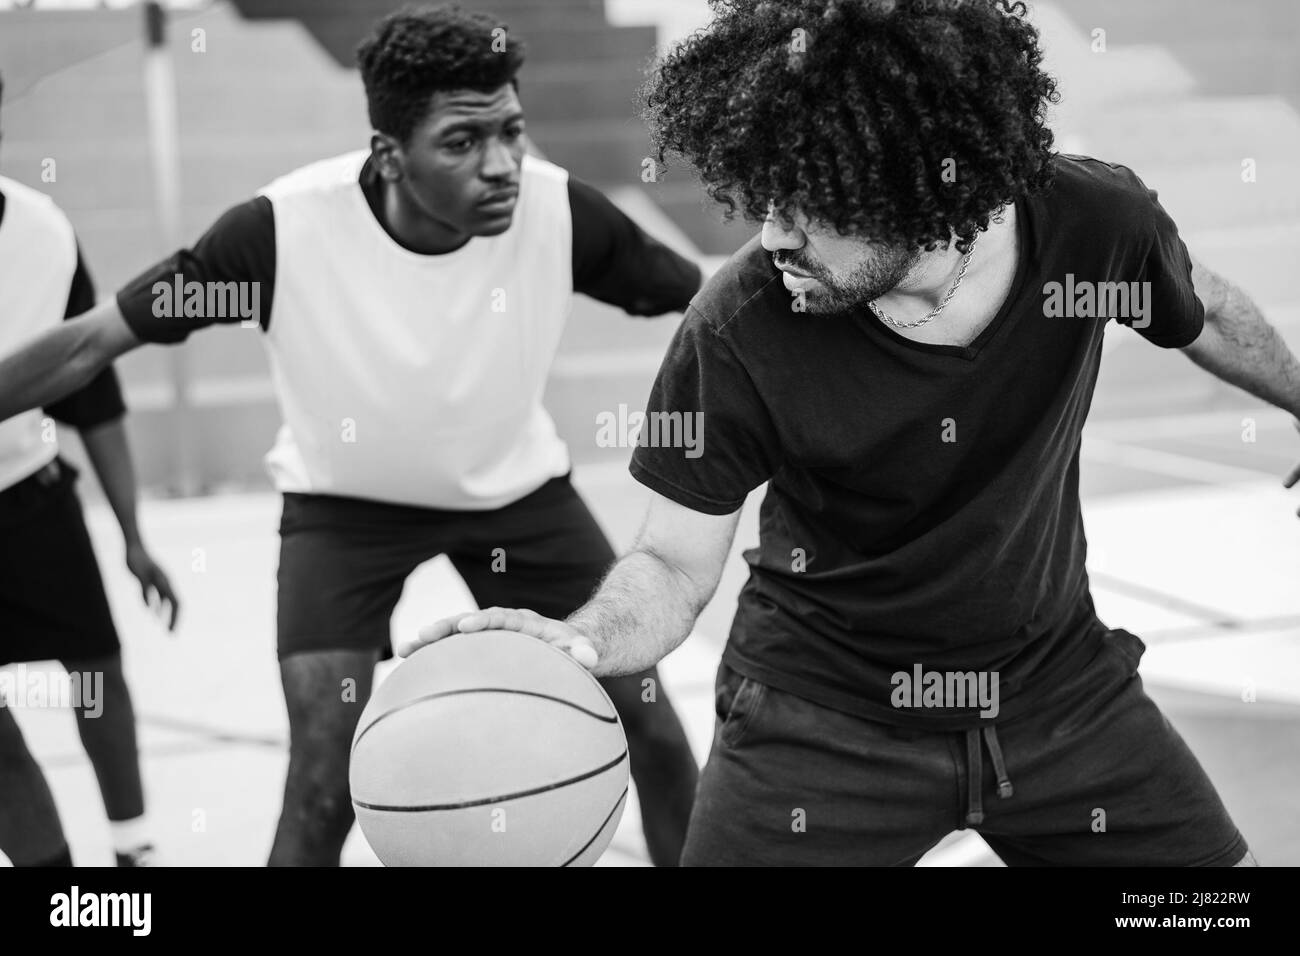 Amis africains jouant au basket-ball en extérieur - attention douce sur l'épaule droite - montage noir et blanc Banque D'Images